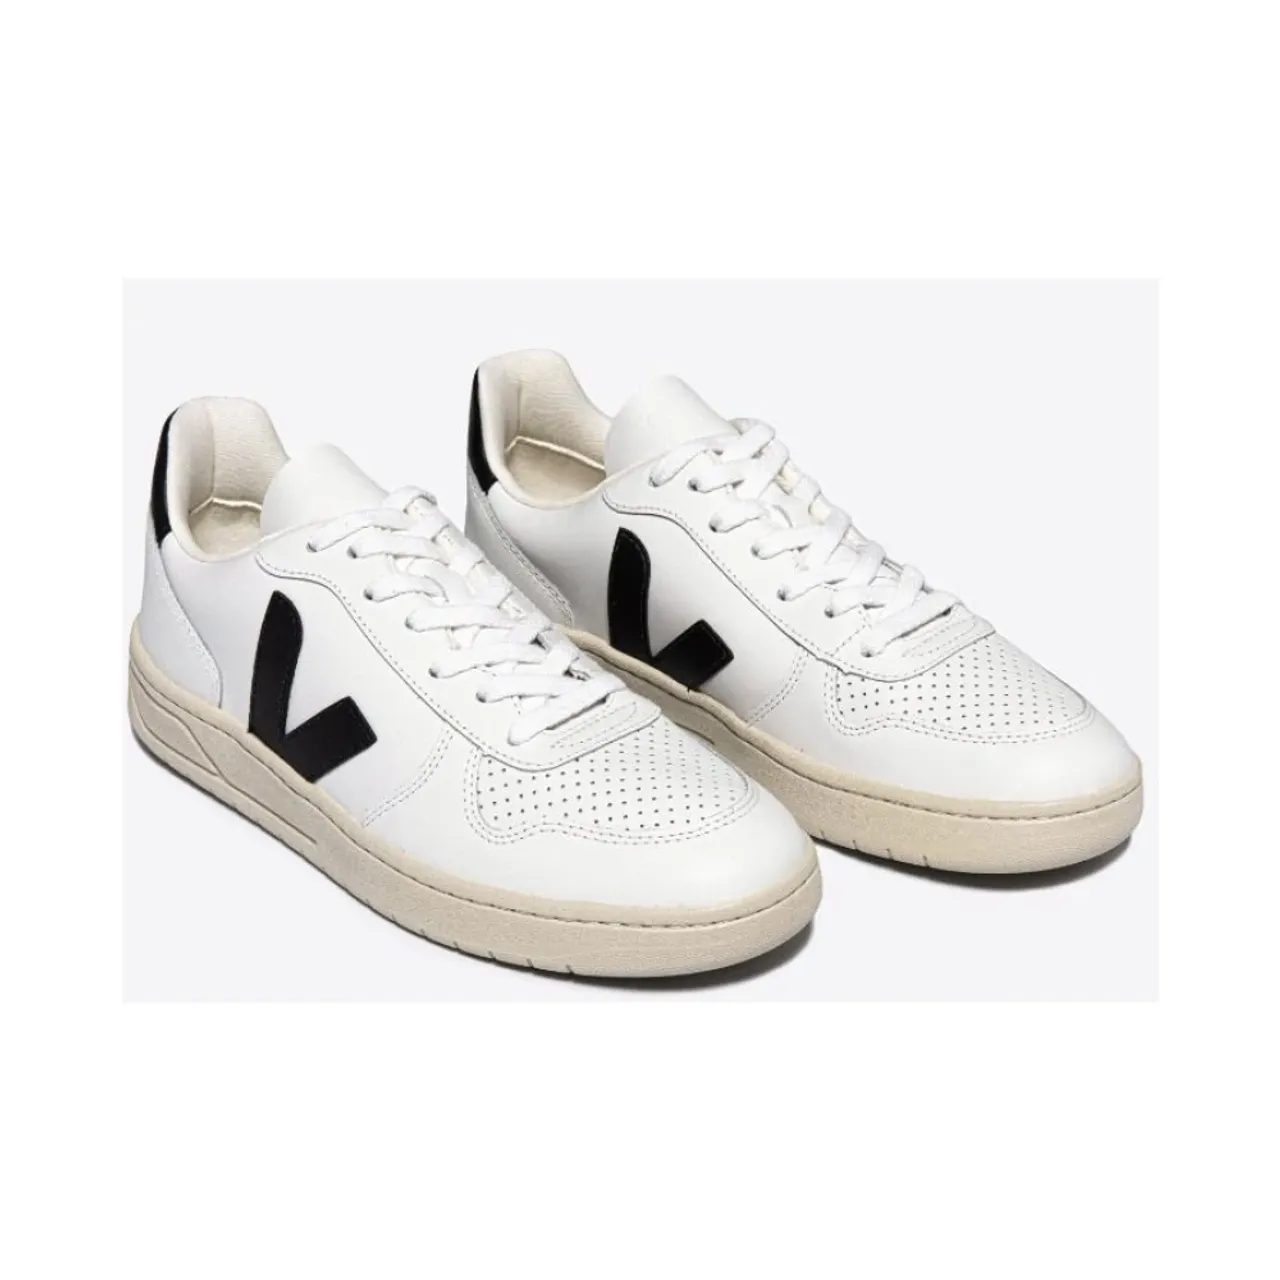 CWL White Black Sneakers V-10 Veja